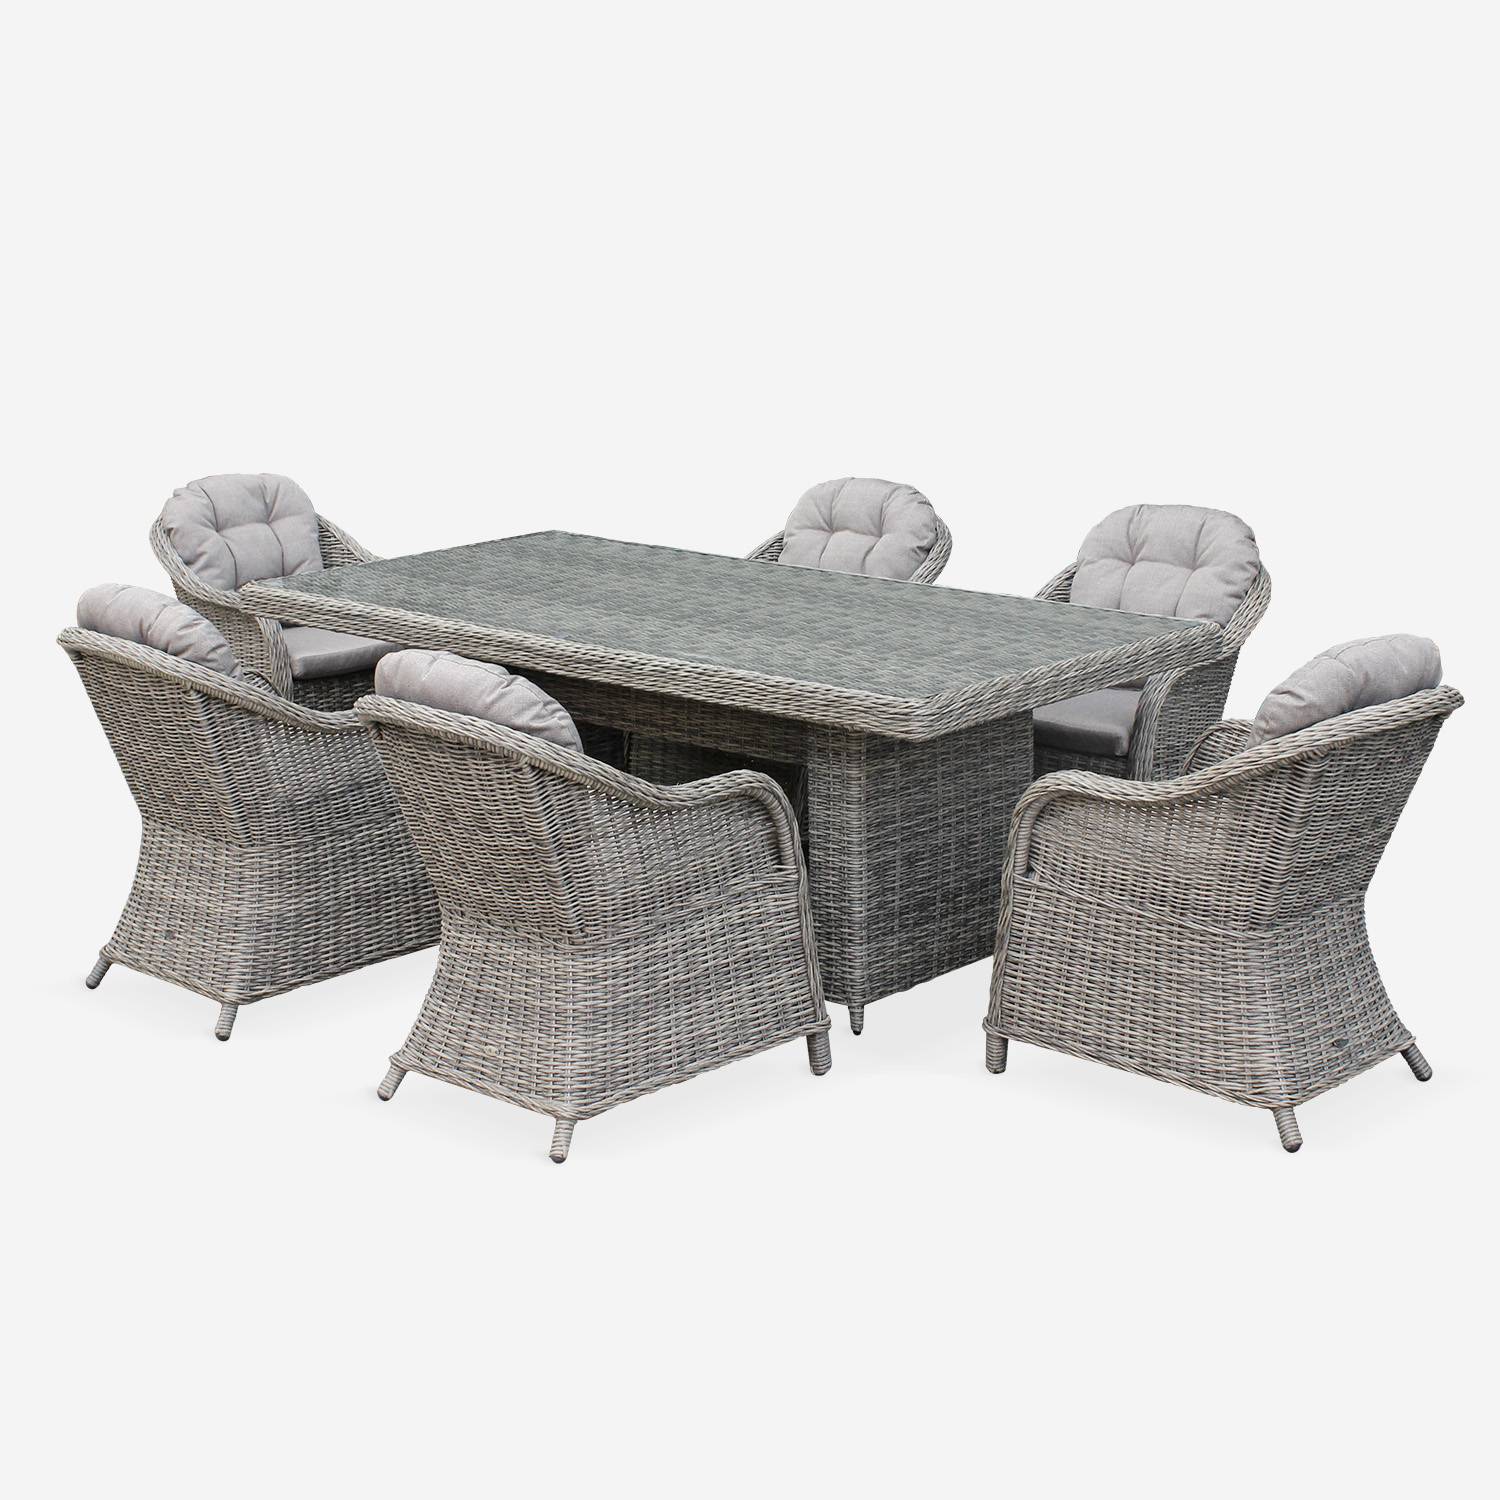 Gartentisch aus abgerundetem Polyrattan - Lecco Grau- Beigefarbene Kissen - 6 Sessel, 6 Plätze, 1 großer Tisch Photo2